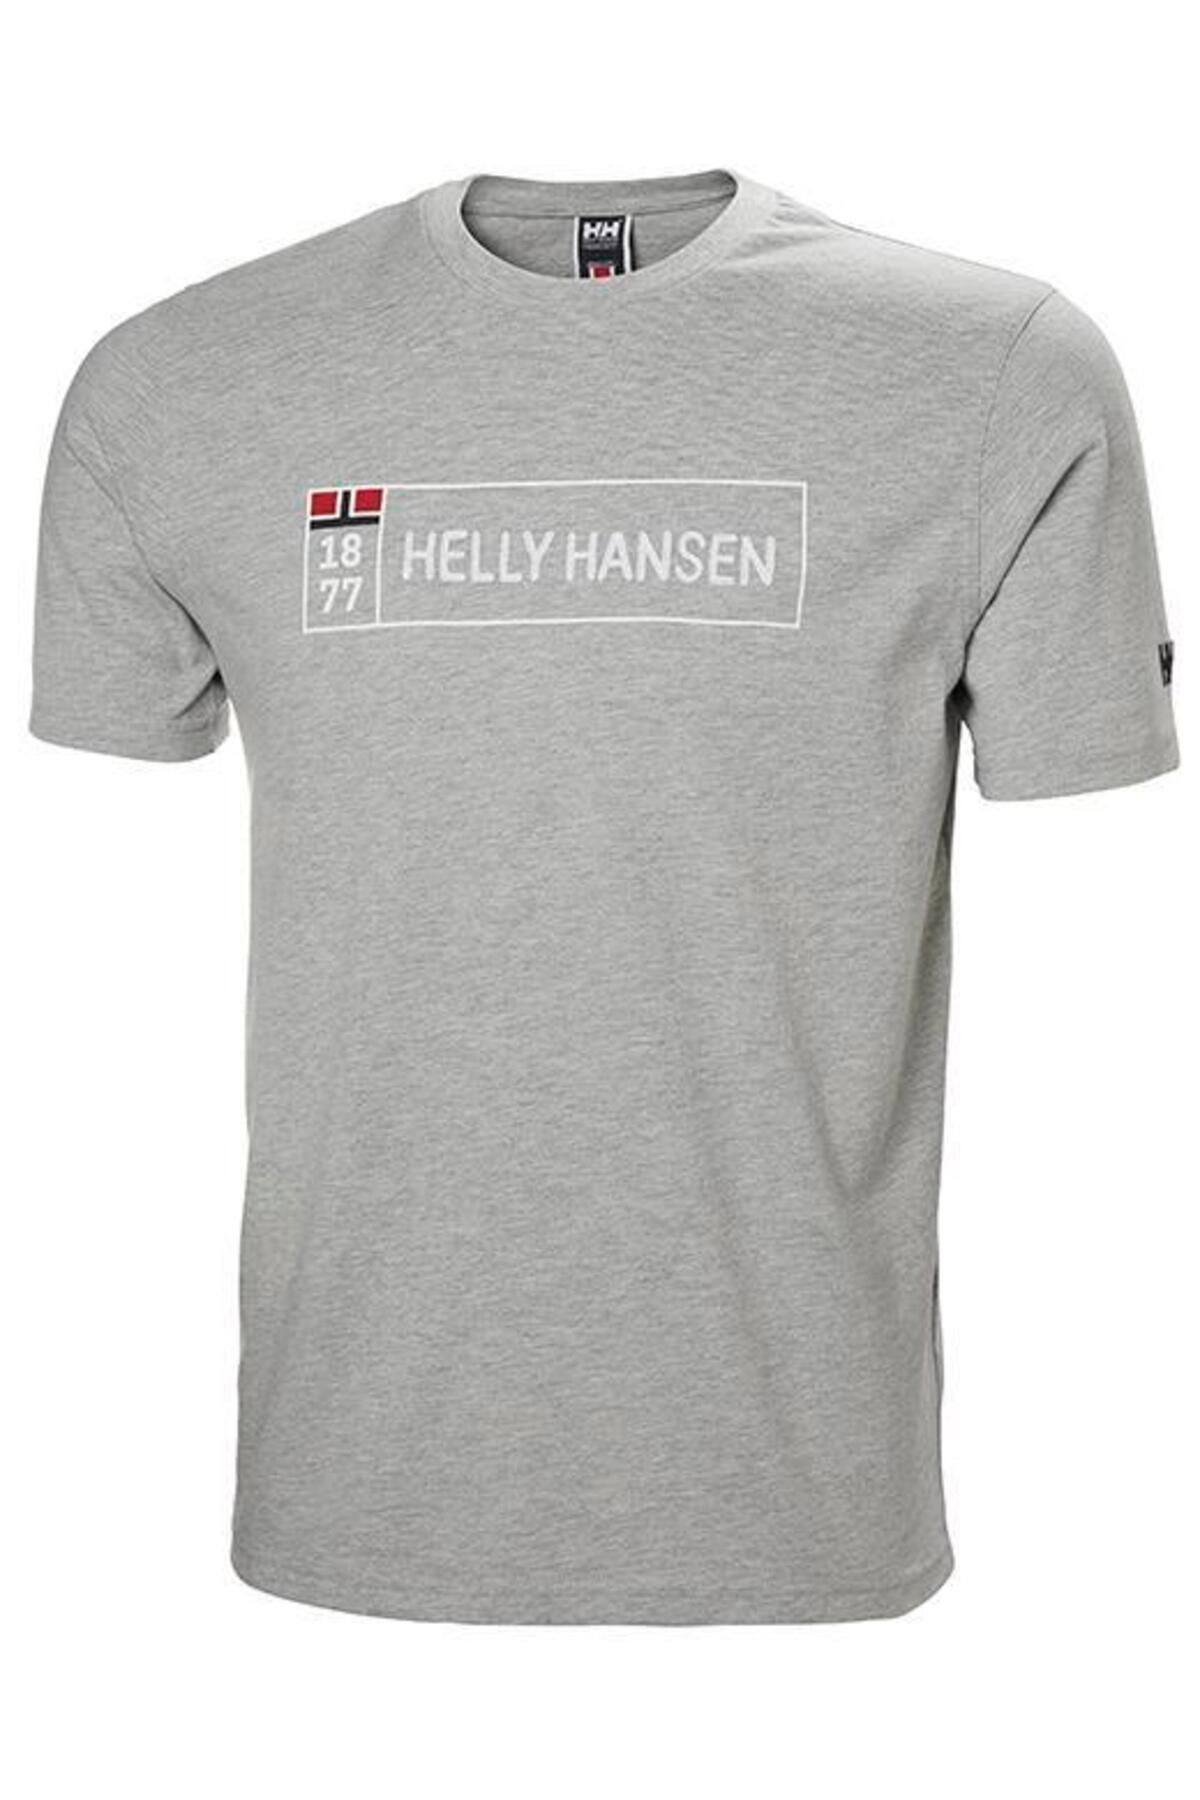 Helly Hansen Hh 1877 T-shırt